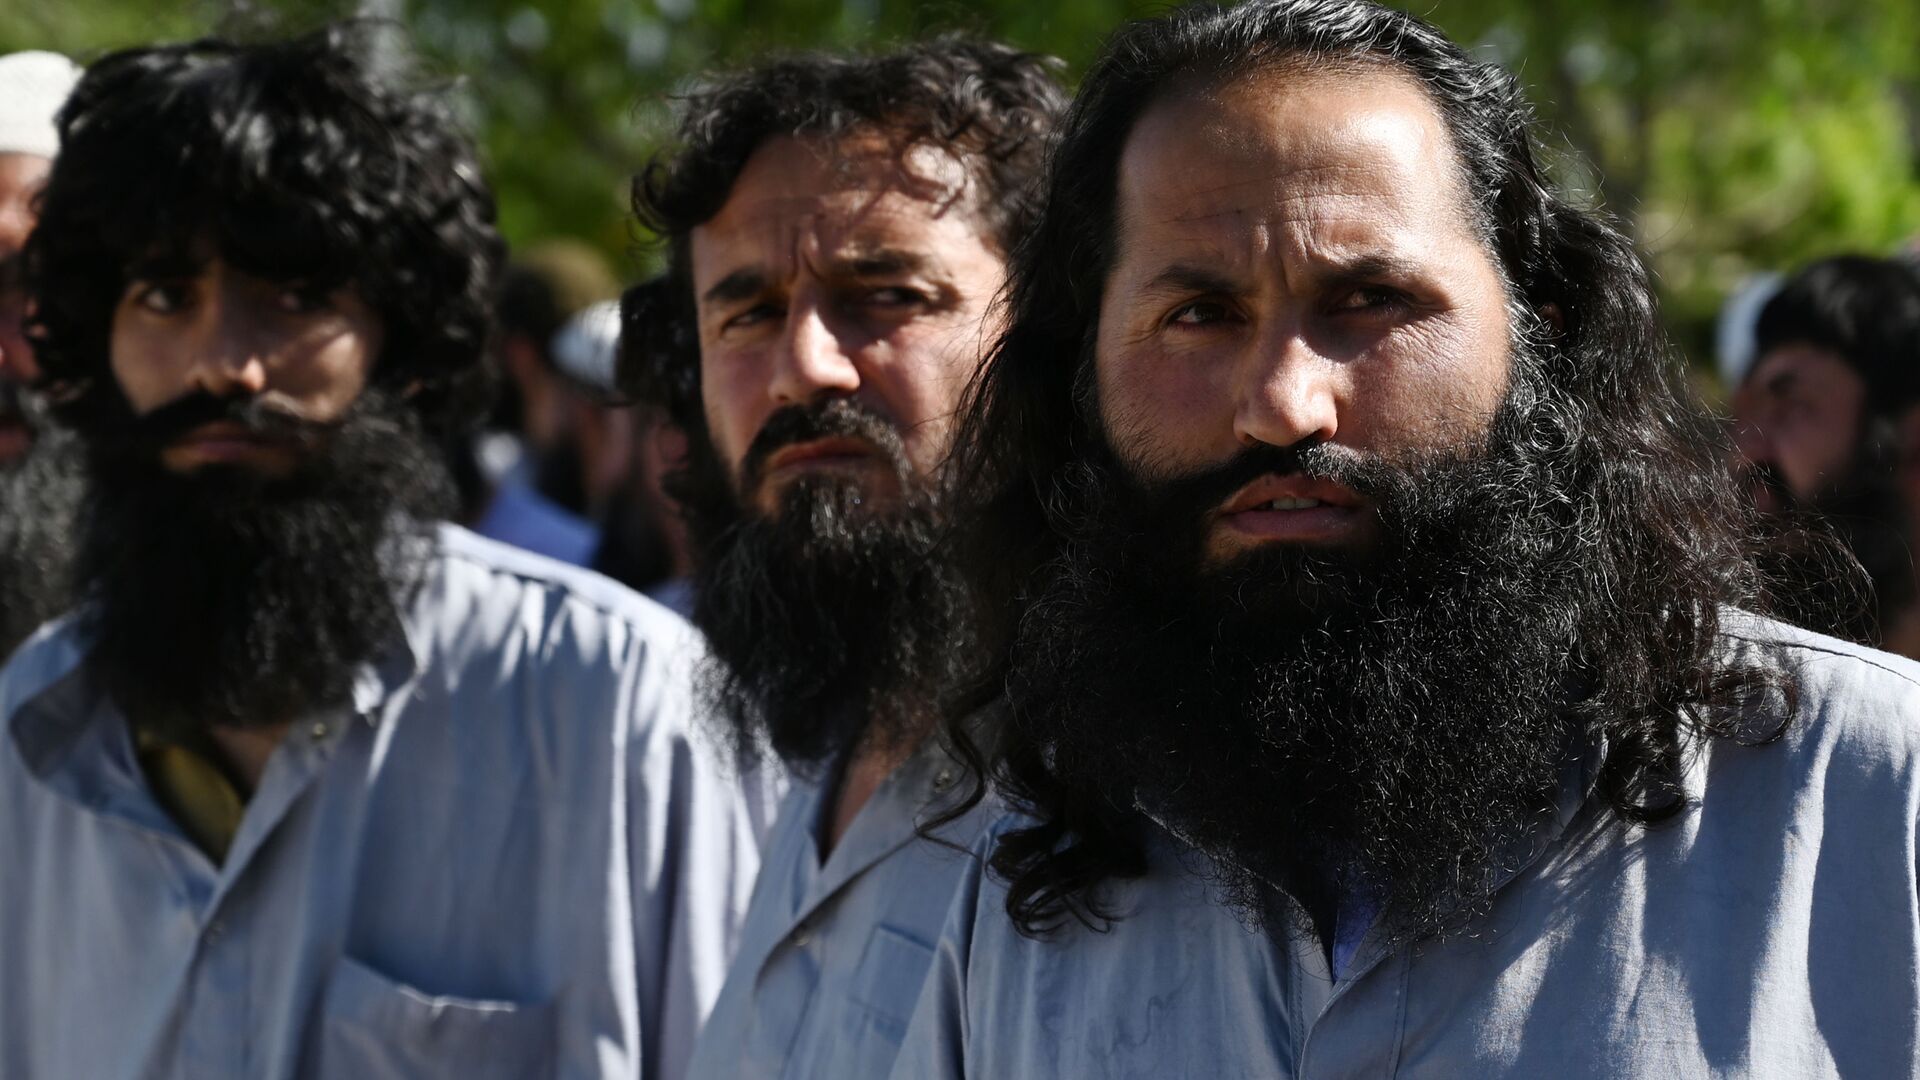 Заключенные талибы во время их освобождения из тюрьмы Баграм, Афганистан - Sputnik Таджикистан, 1920, 16.02.2021